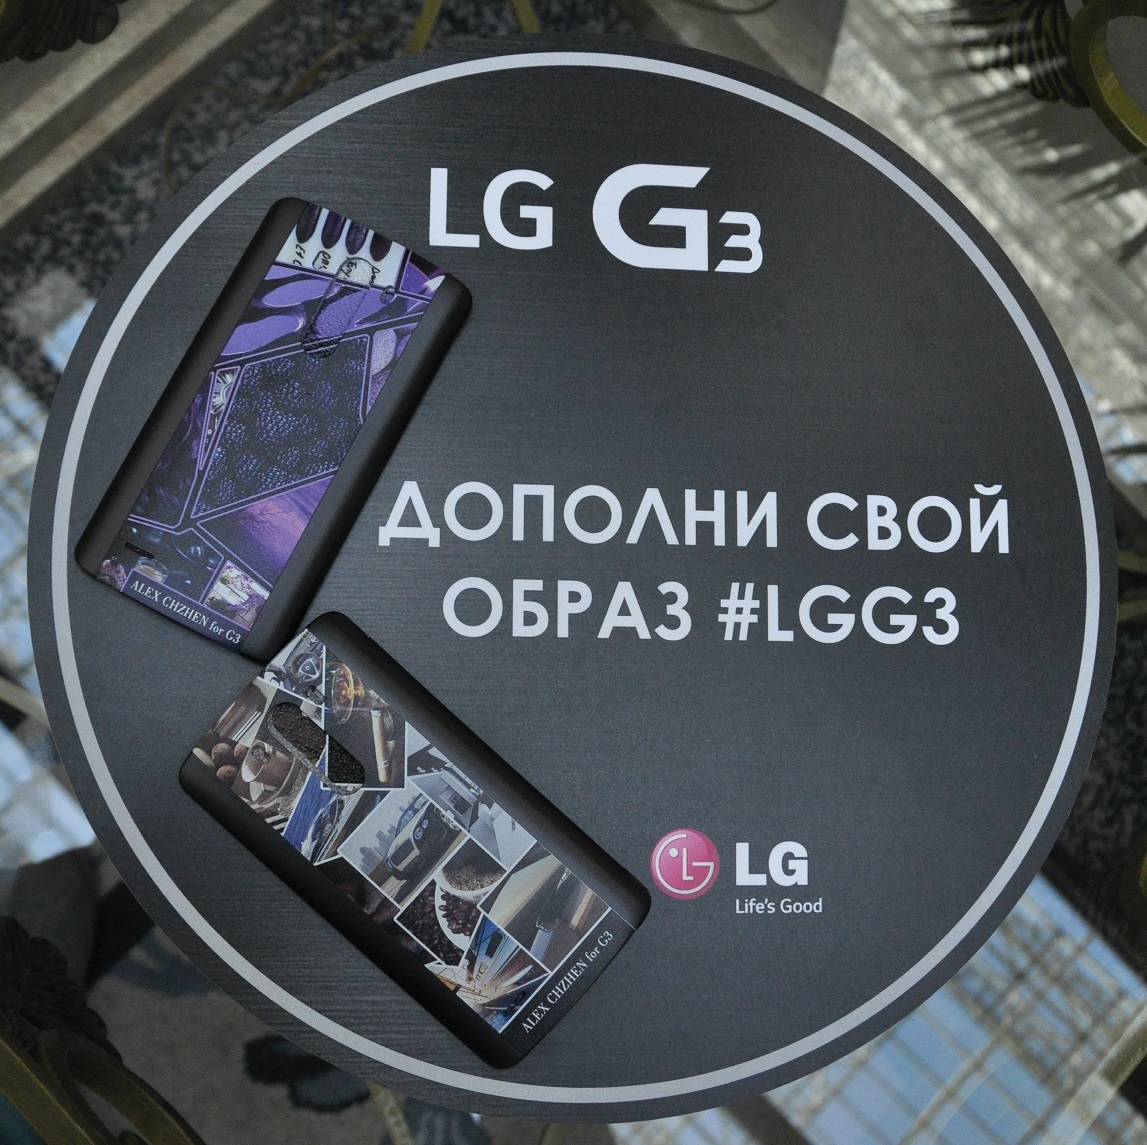 Эксклюзивная коллекция чехлов для смартфона LG G3 от Алексея Чжена